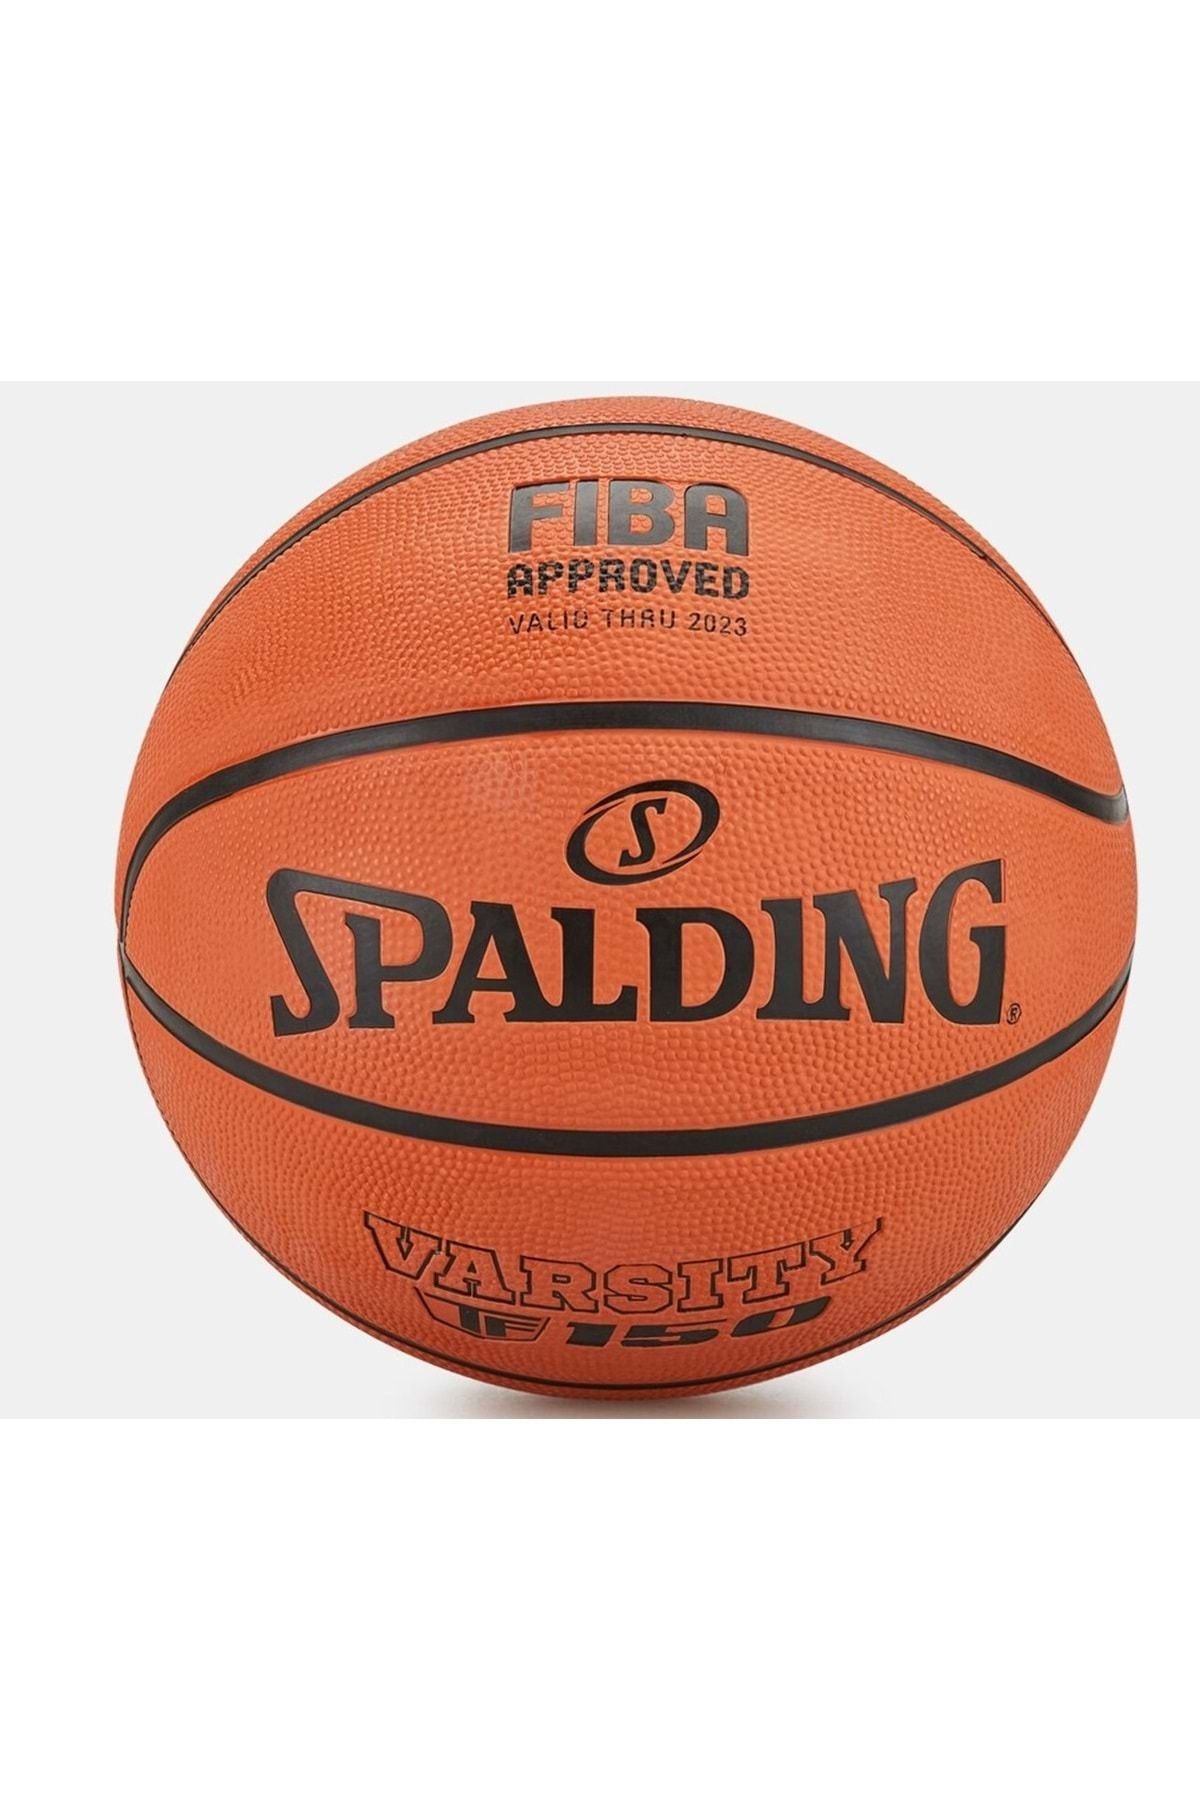 Spalding Basketbol Topu Tf 150 Varsıty Özel Seri Fıba Logolu Turuncu